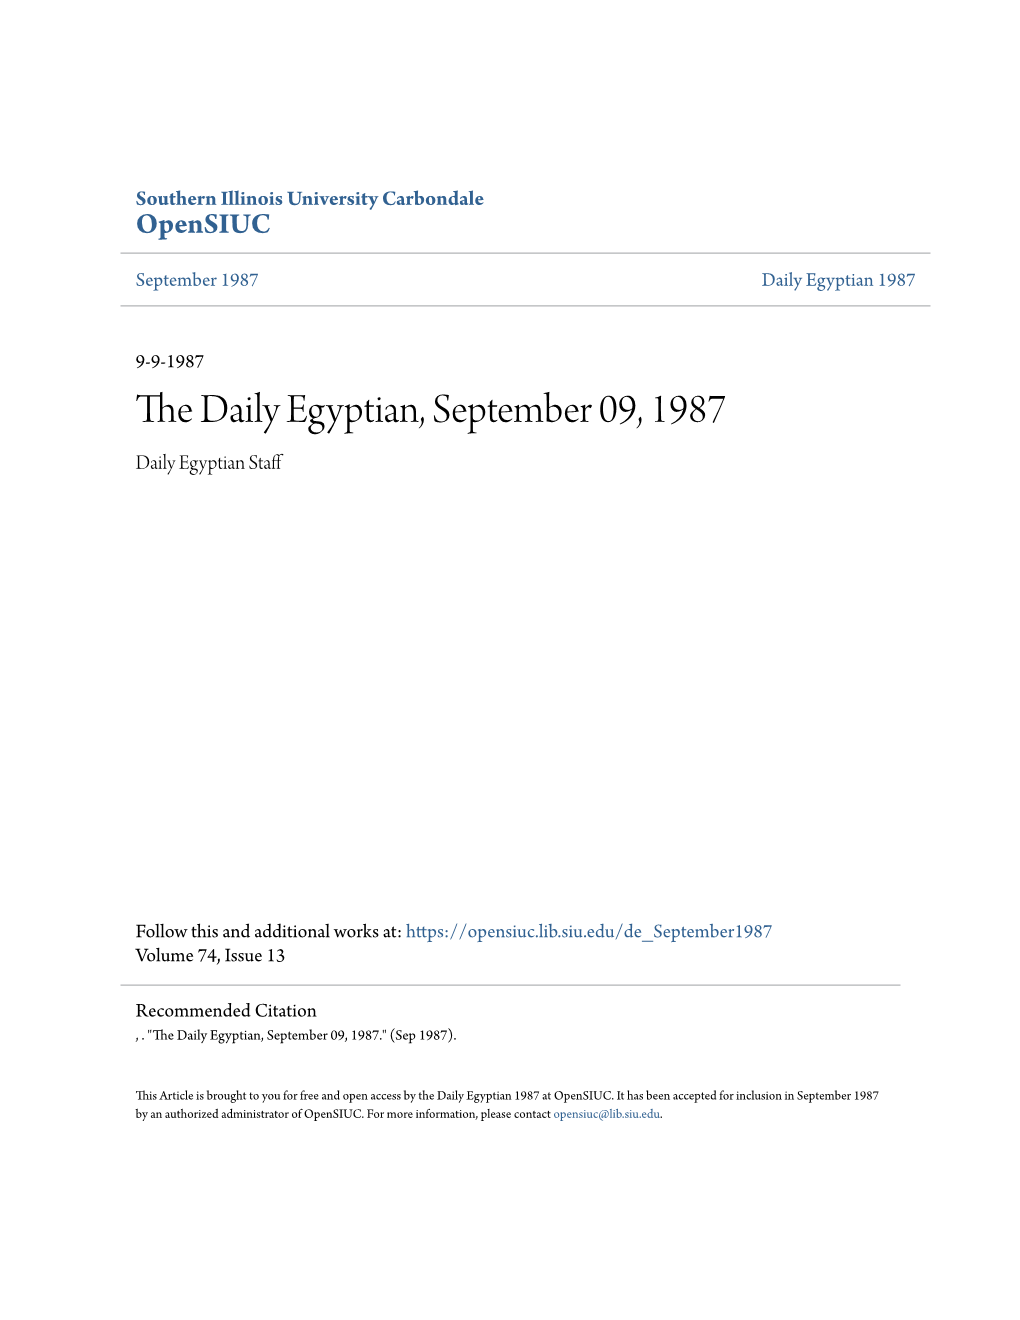 The Daily Egyptian, September 09, 1987